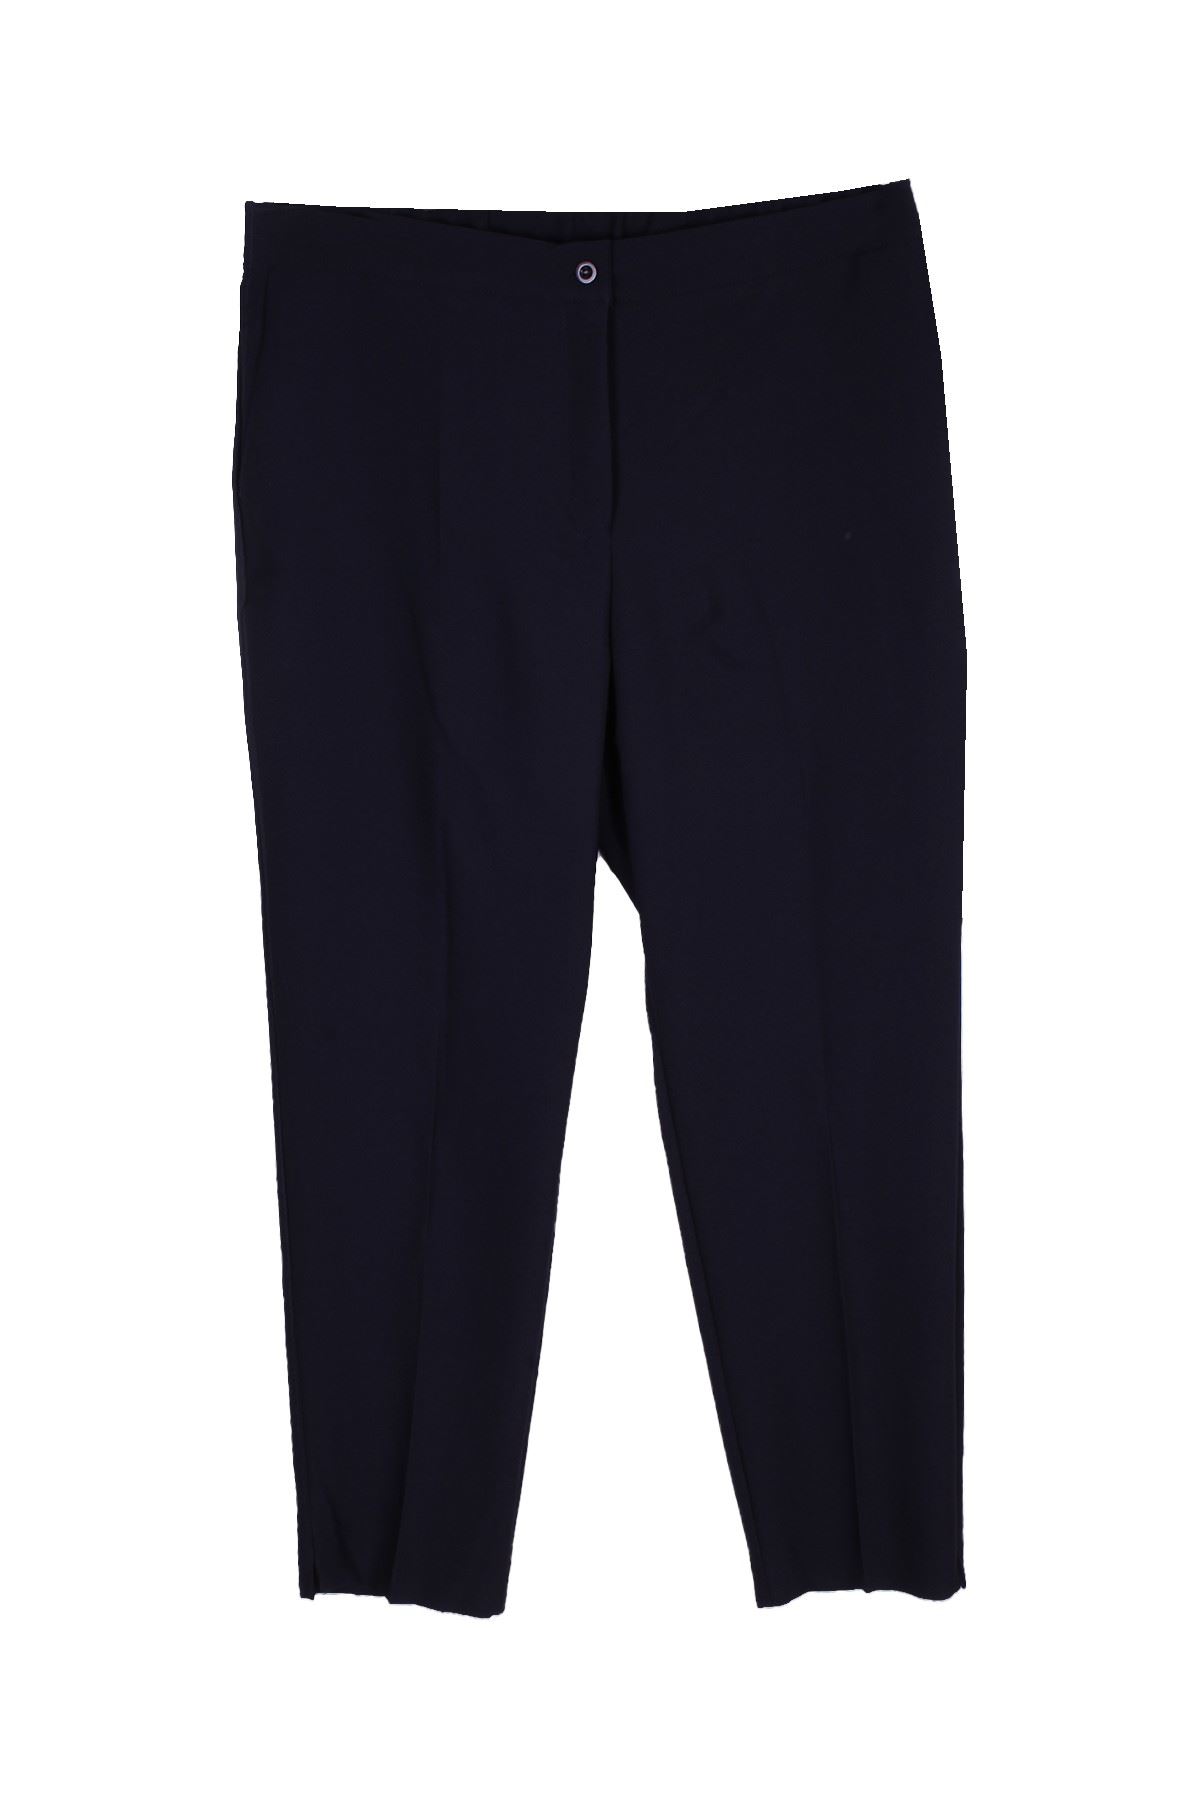 Giyinsen Kadın Lacivert Klasik Pantolon - 23KR27001699